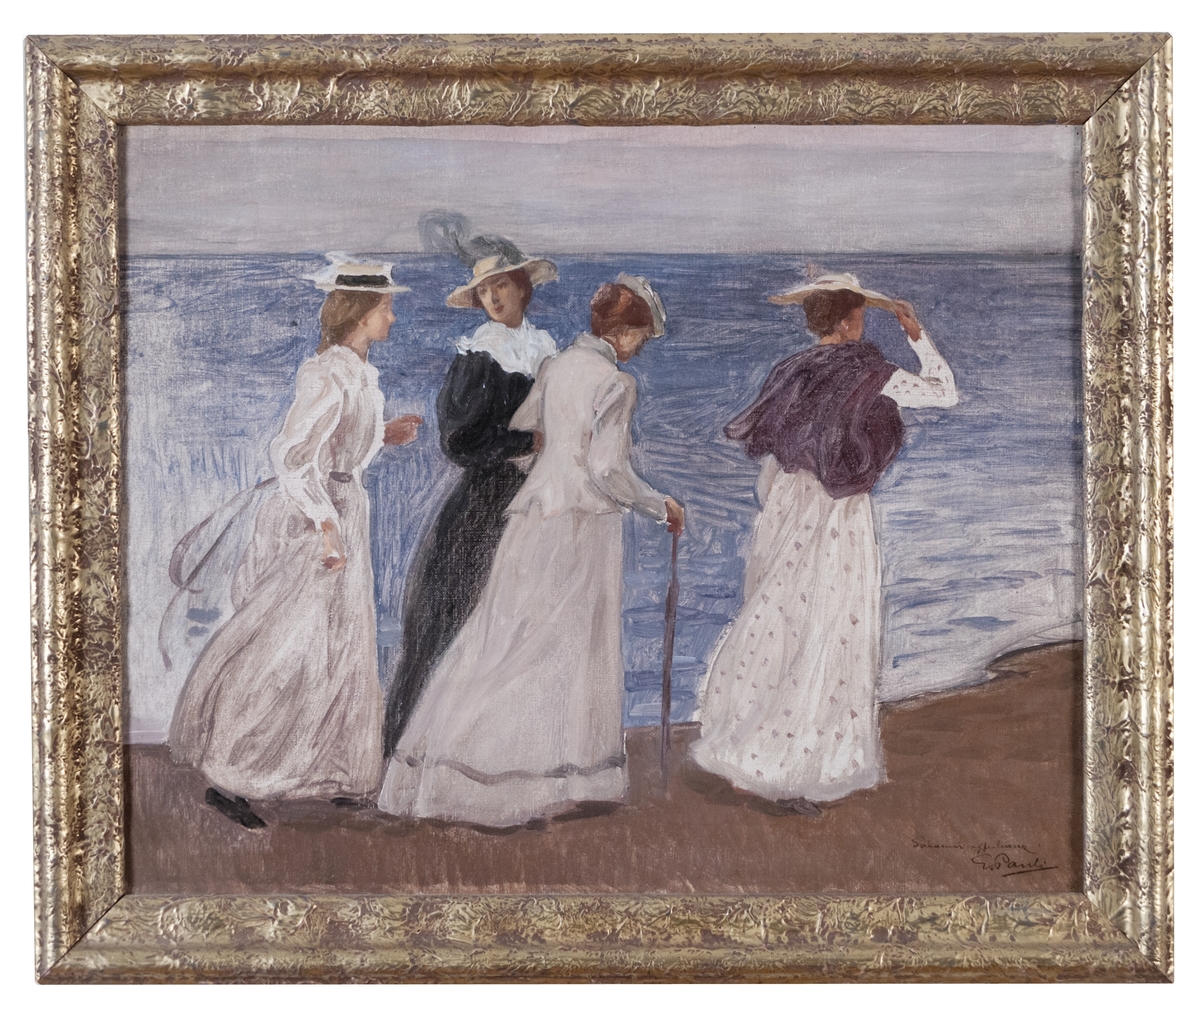 Fyra kvinnor vandrar på sandstranden vid havet. Nedtill til höger har konstnären målat/skrivit "Souvenir affectueaux". Guldfärgad ram.